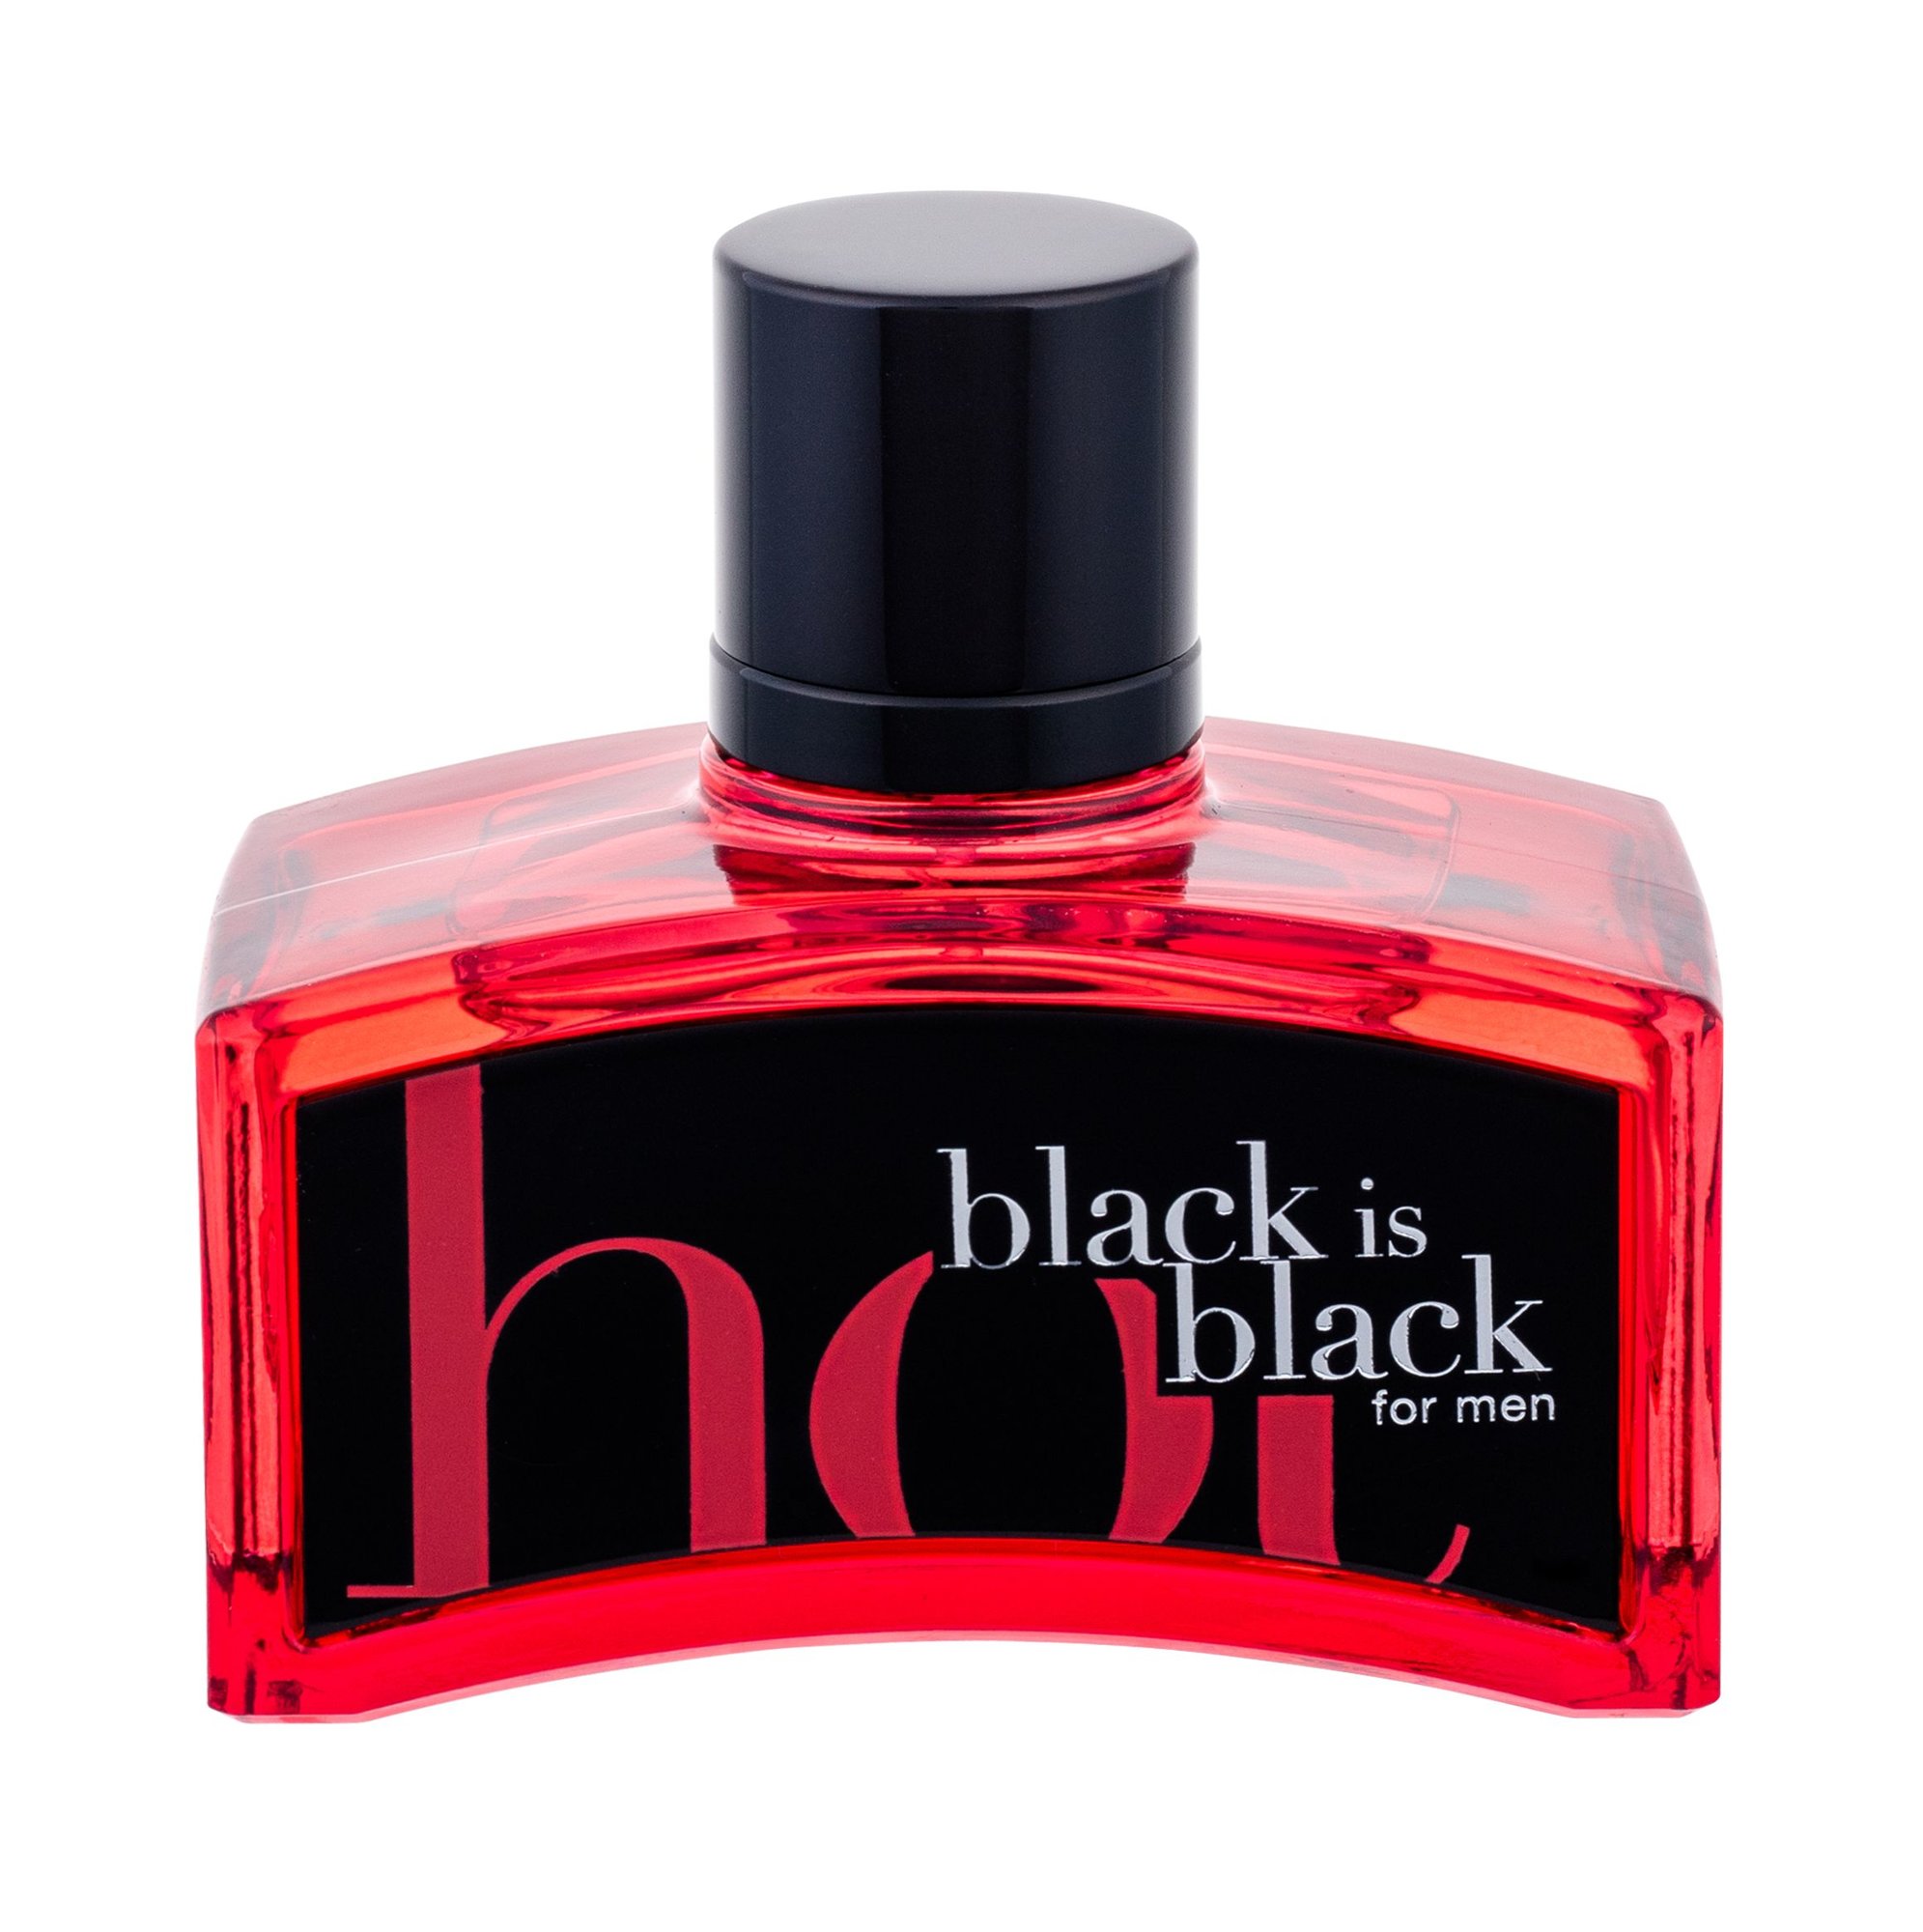 Nuparfums Black is Black Hot Black